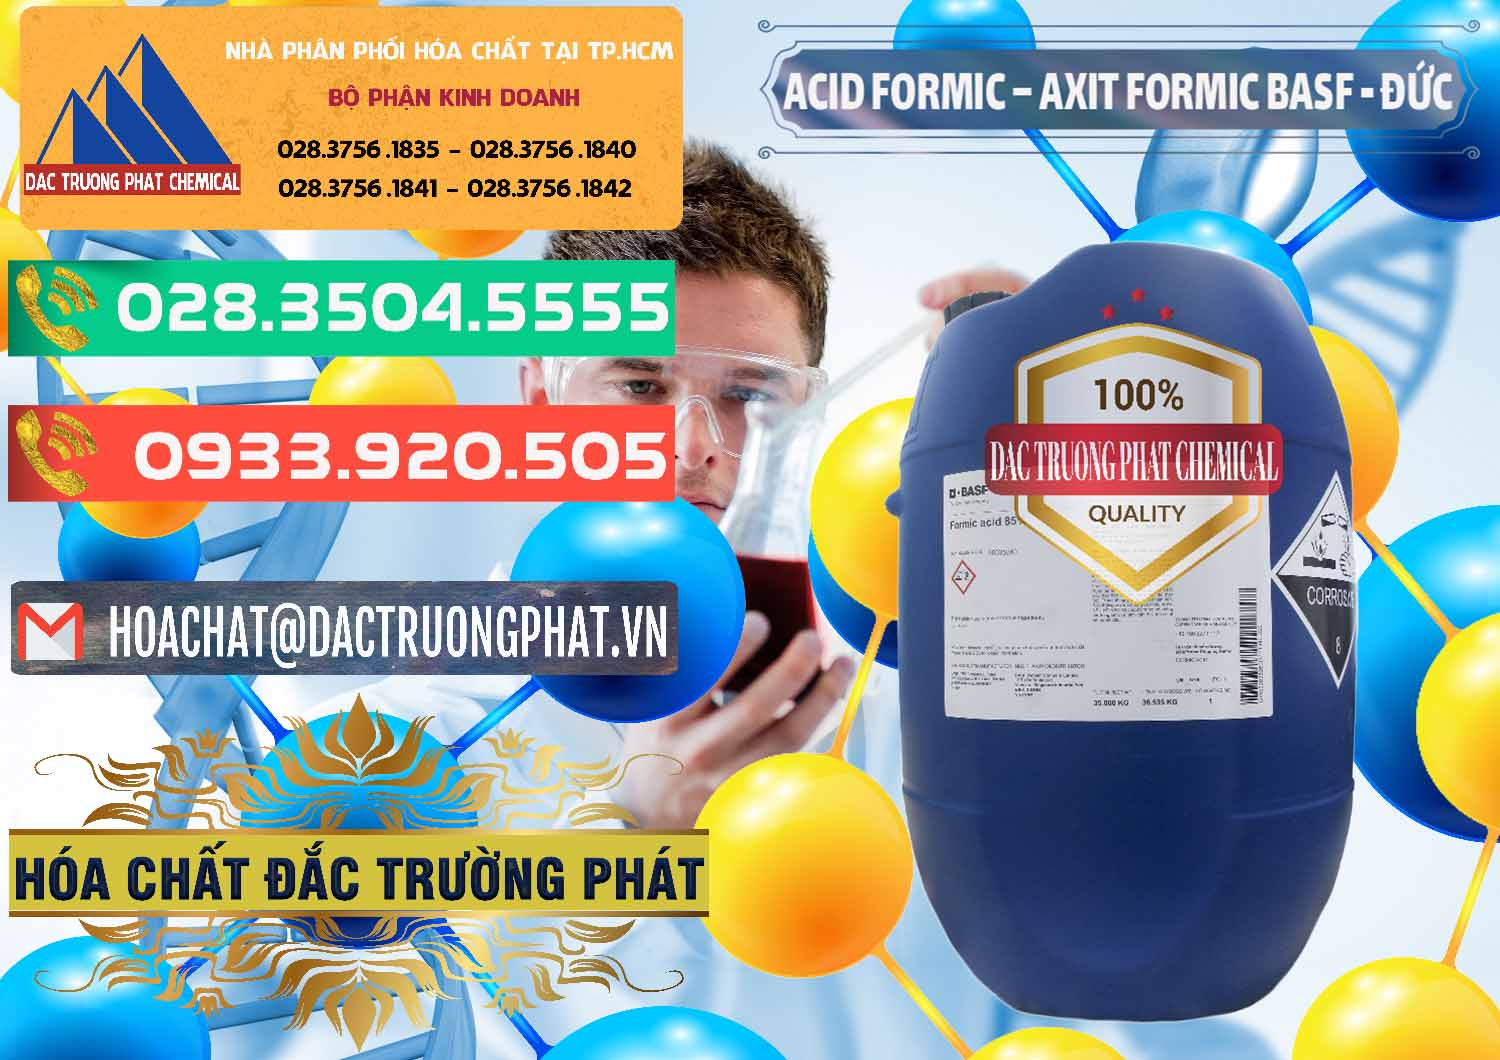 Bán - cung ứng Acid Formic - Axit Formic BASF Đức Germany - 0028 - Công ty bán & cung cấp hóa chất tại TP.HCM - congtyhoachat.com.vn